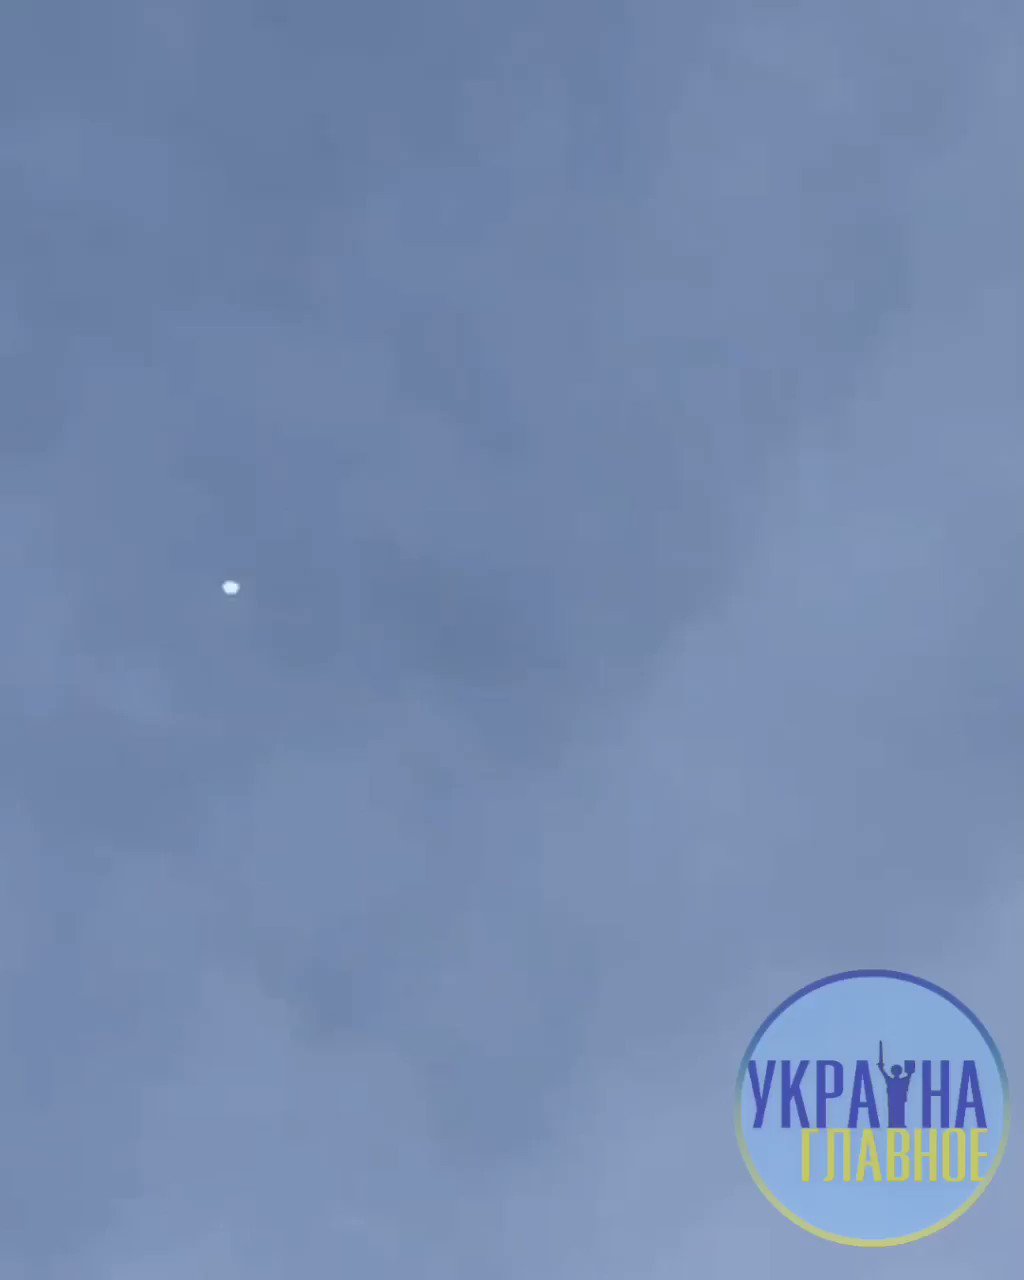 [分享] 摩爾多瓦也出現了不明的氣球飛行物